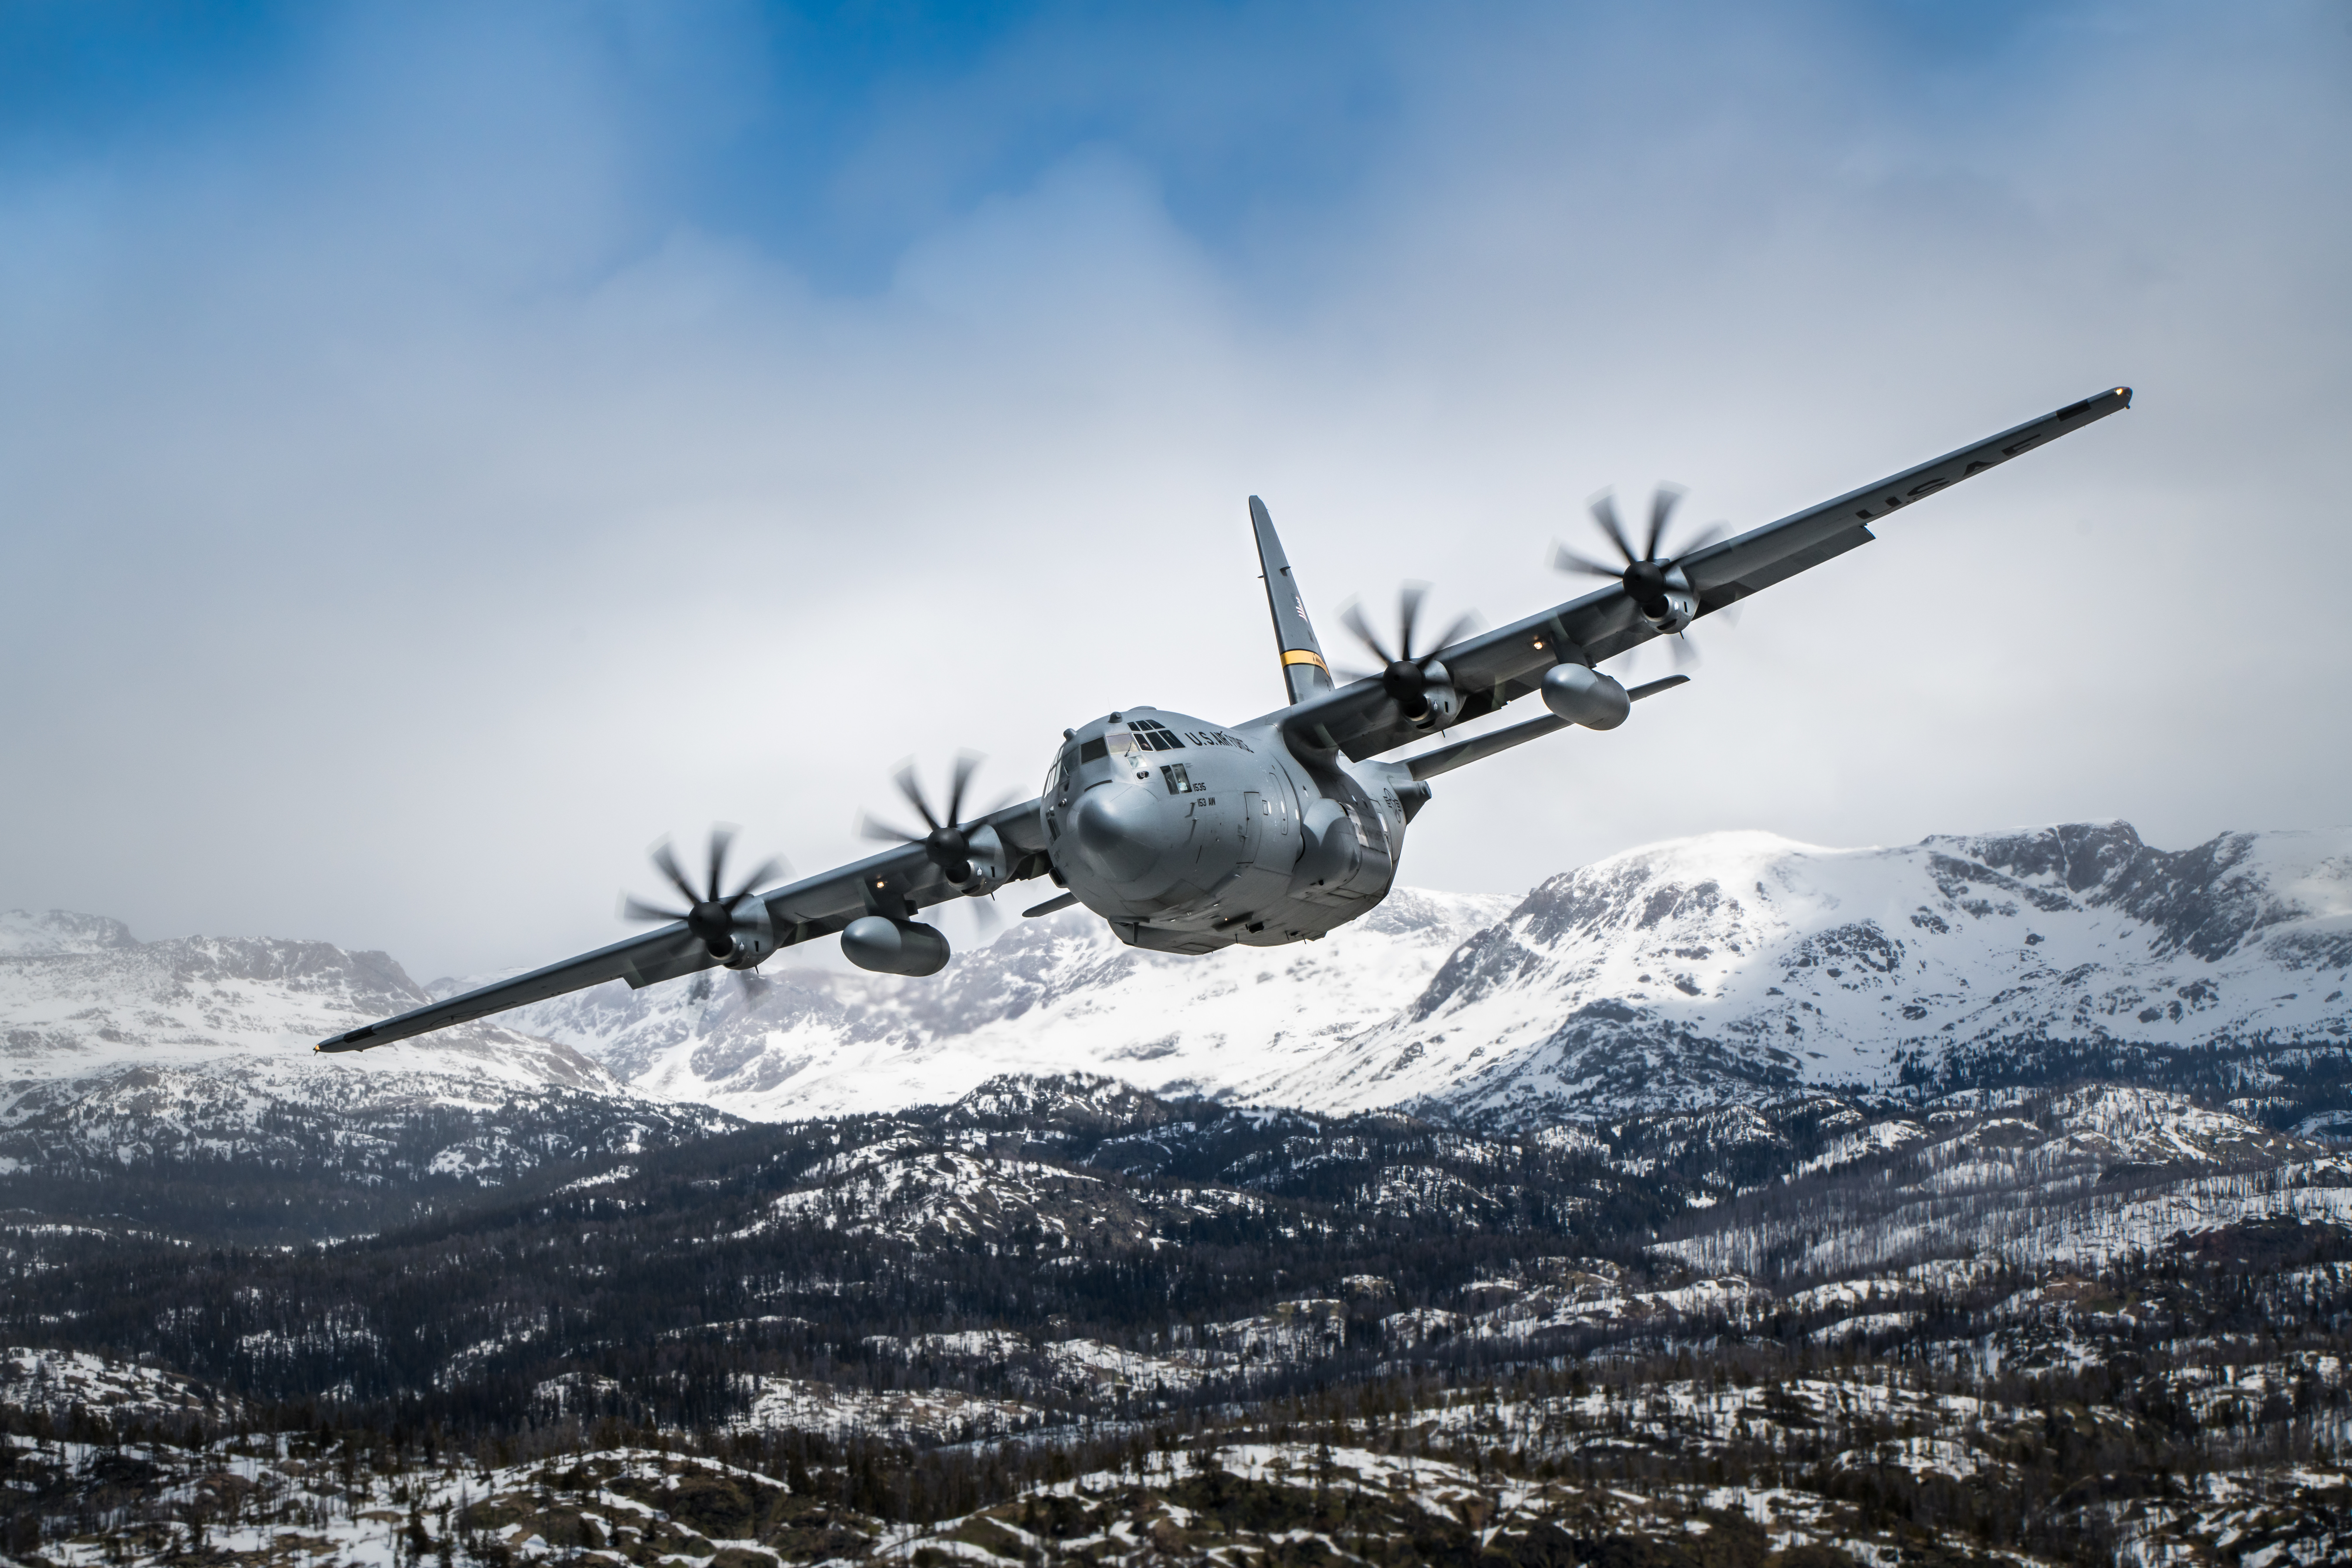 C 130 Hercules > Air Force > Fact Sheet